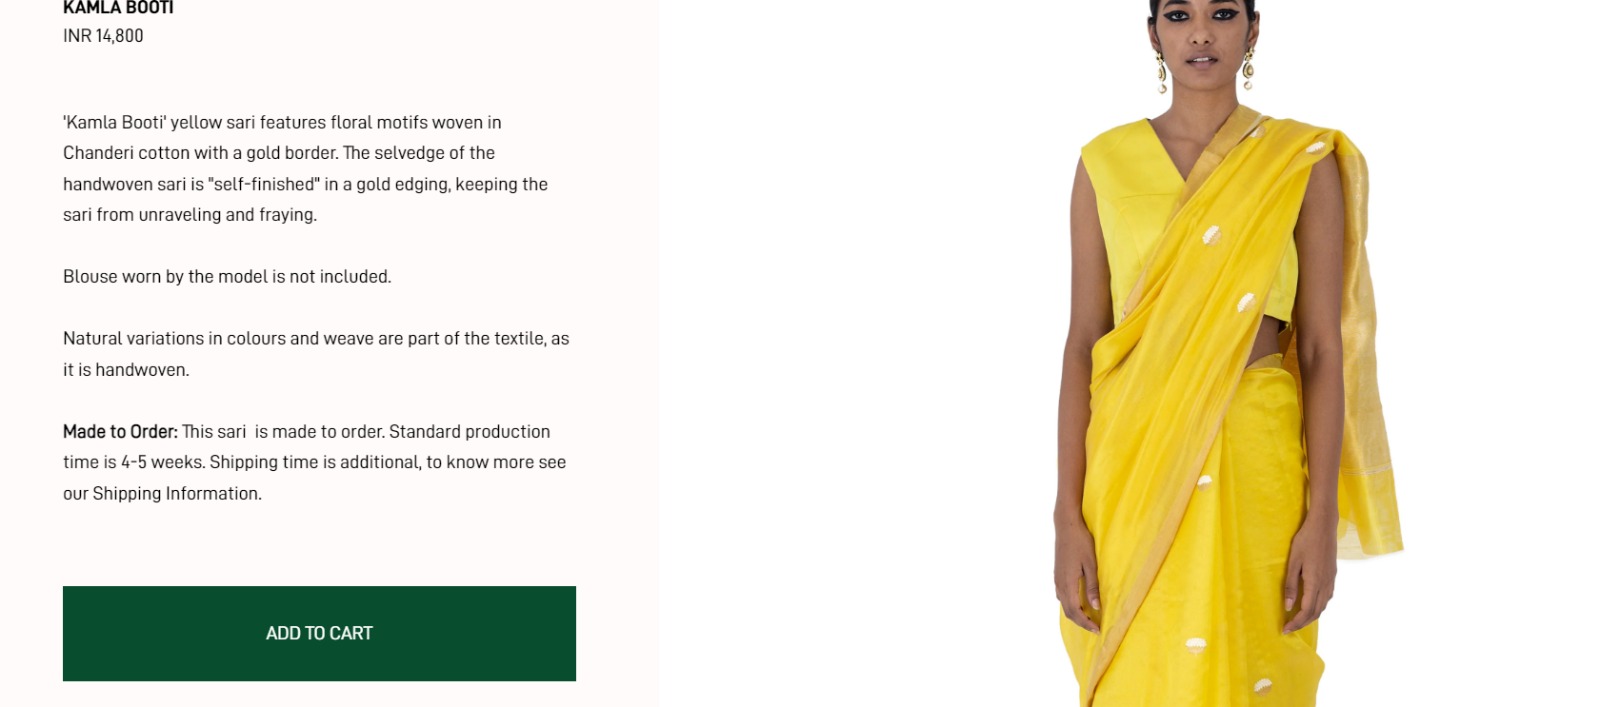 Price of Katrina Kaif's yellow saree revealed